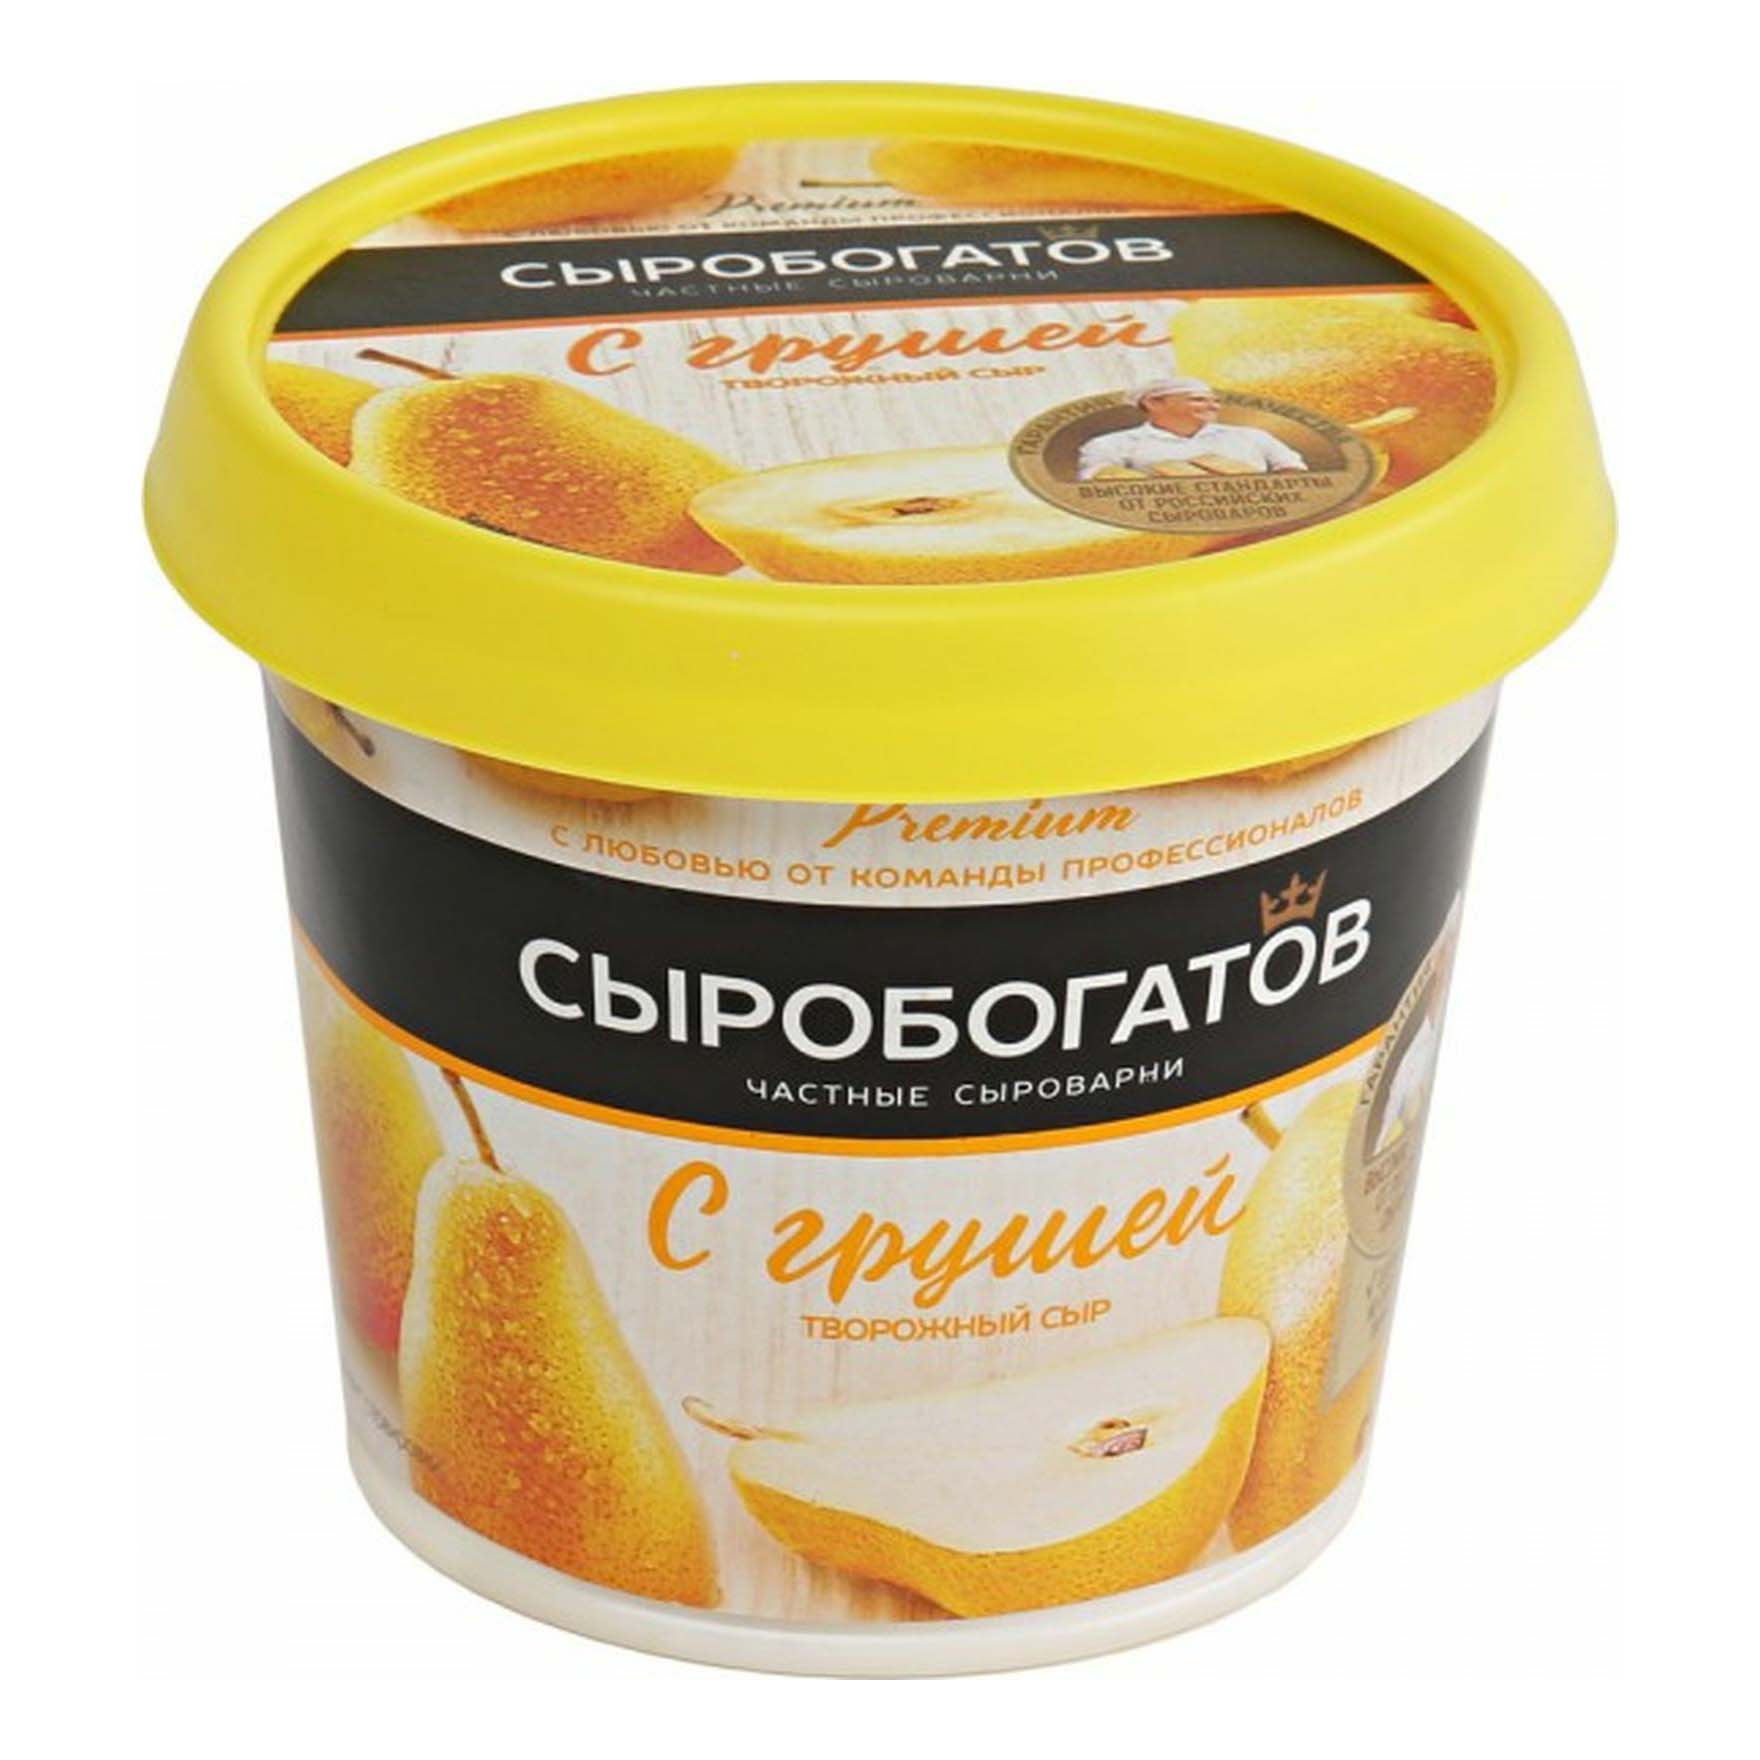 Творожный сыр Сыробогатов с грушей 55% 140 г